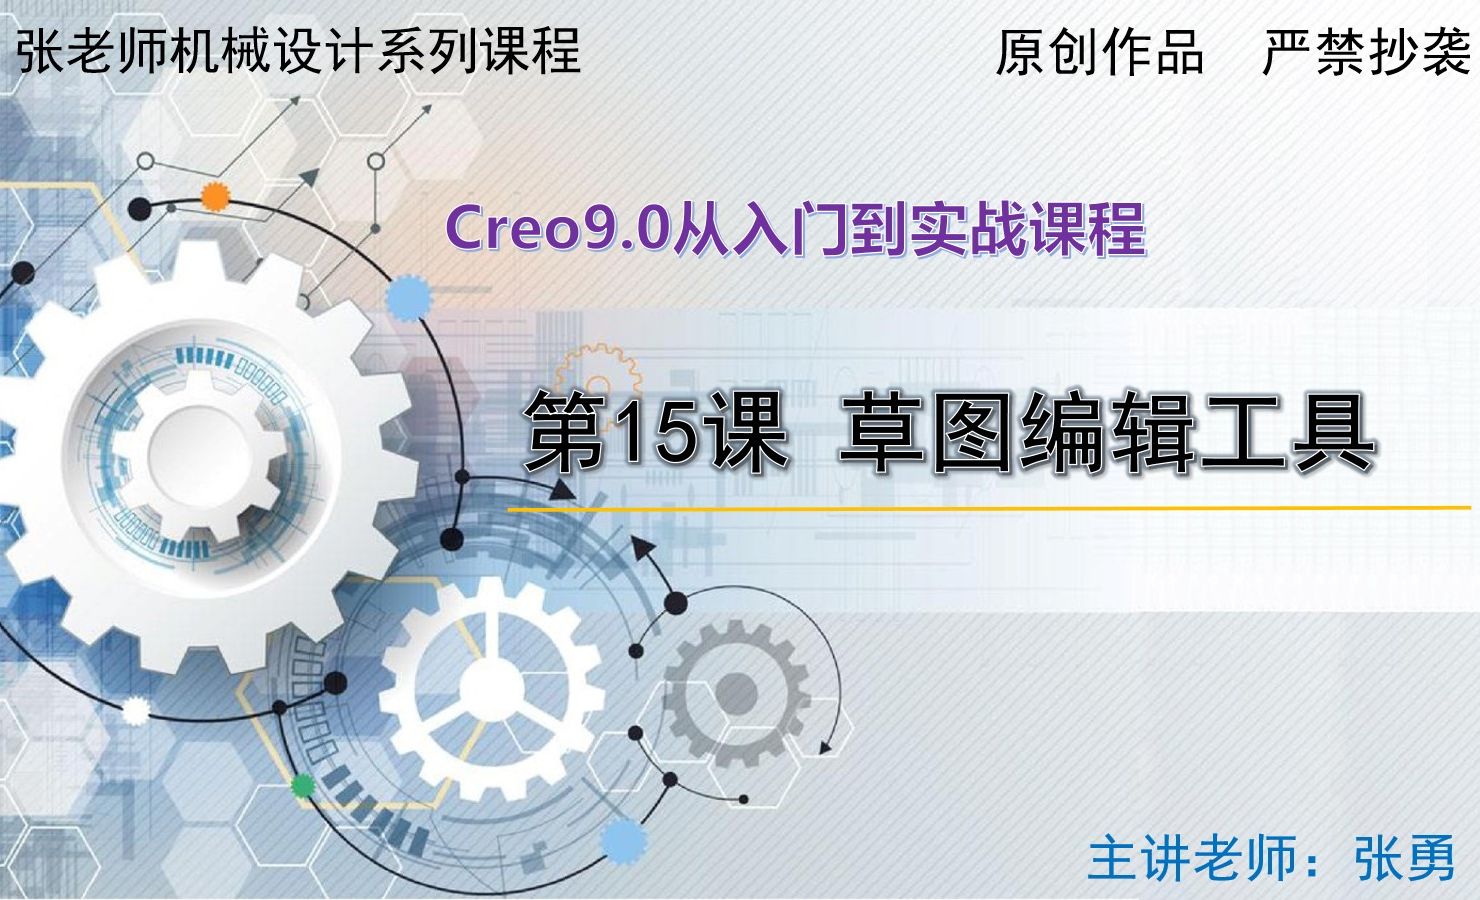 【基础工具】草图编辑工具-Creo9.0从入门到实战